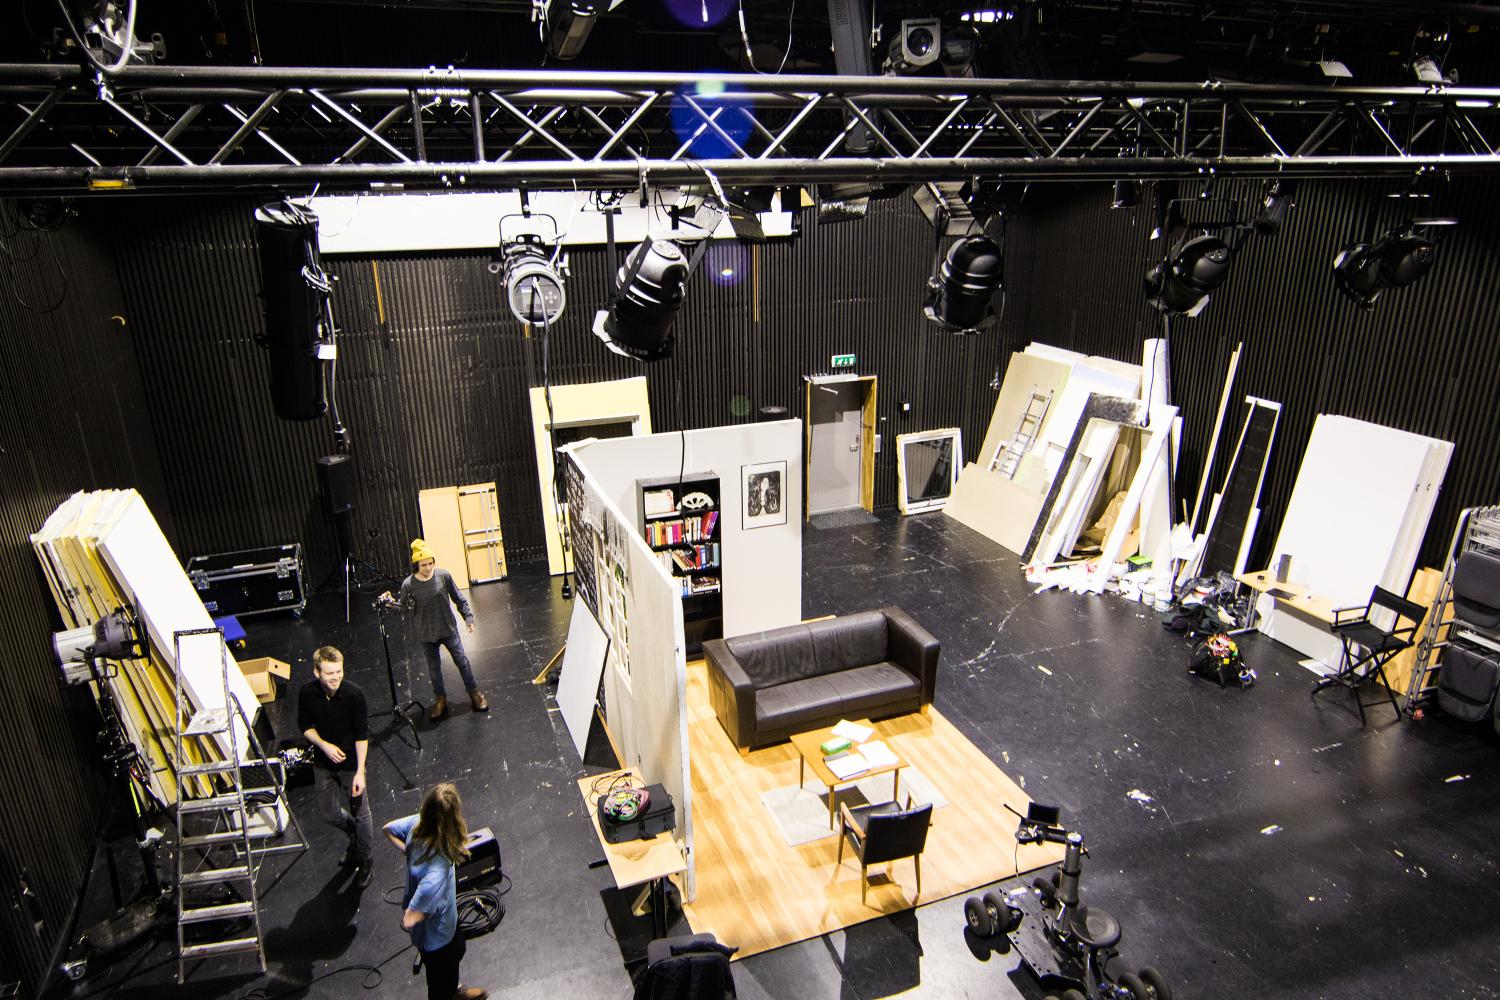 Filming i blackbox ved Filmkunstskolen i Kabelvåg.